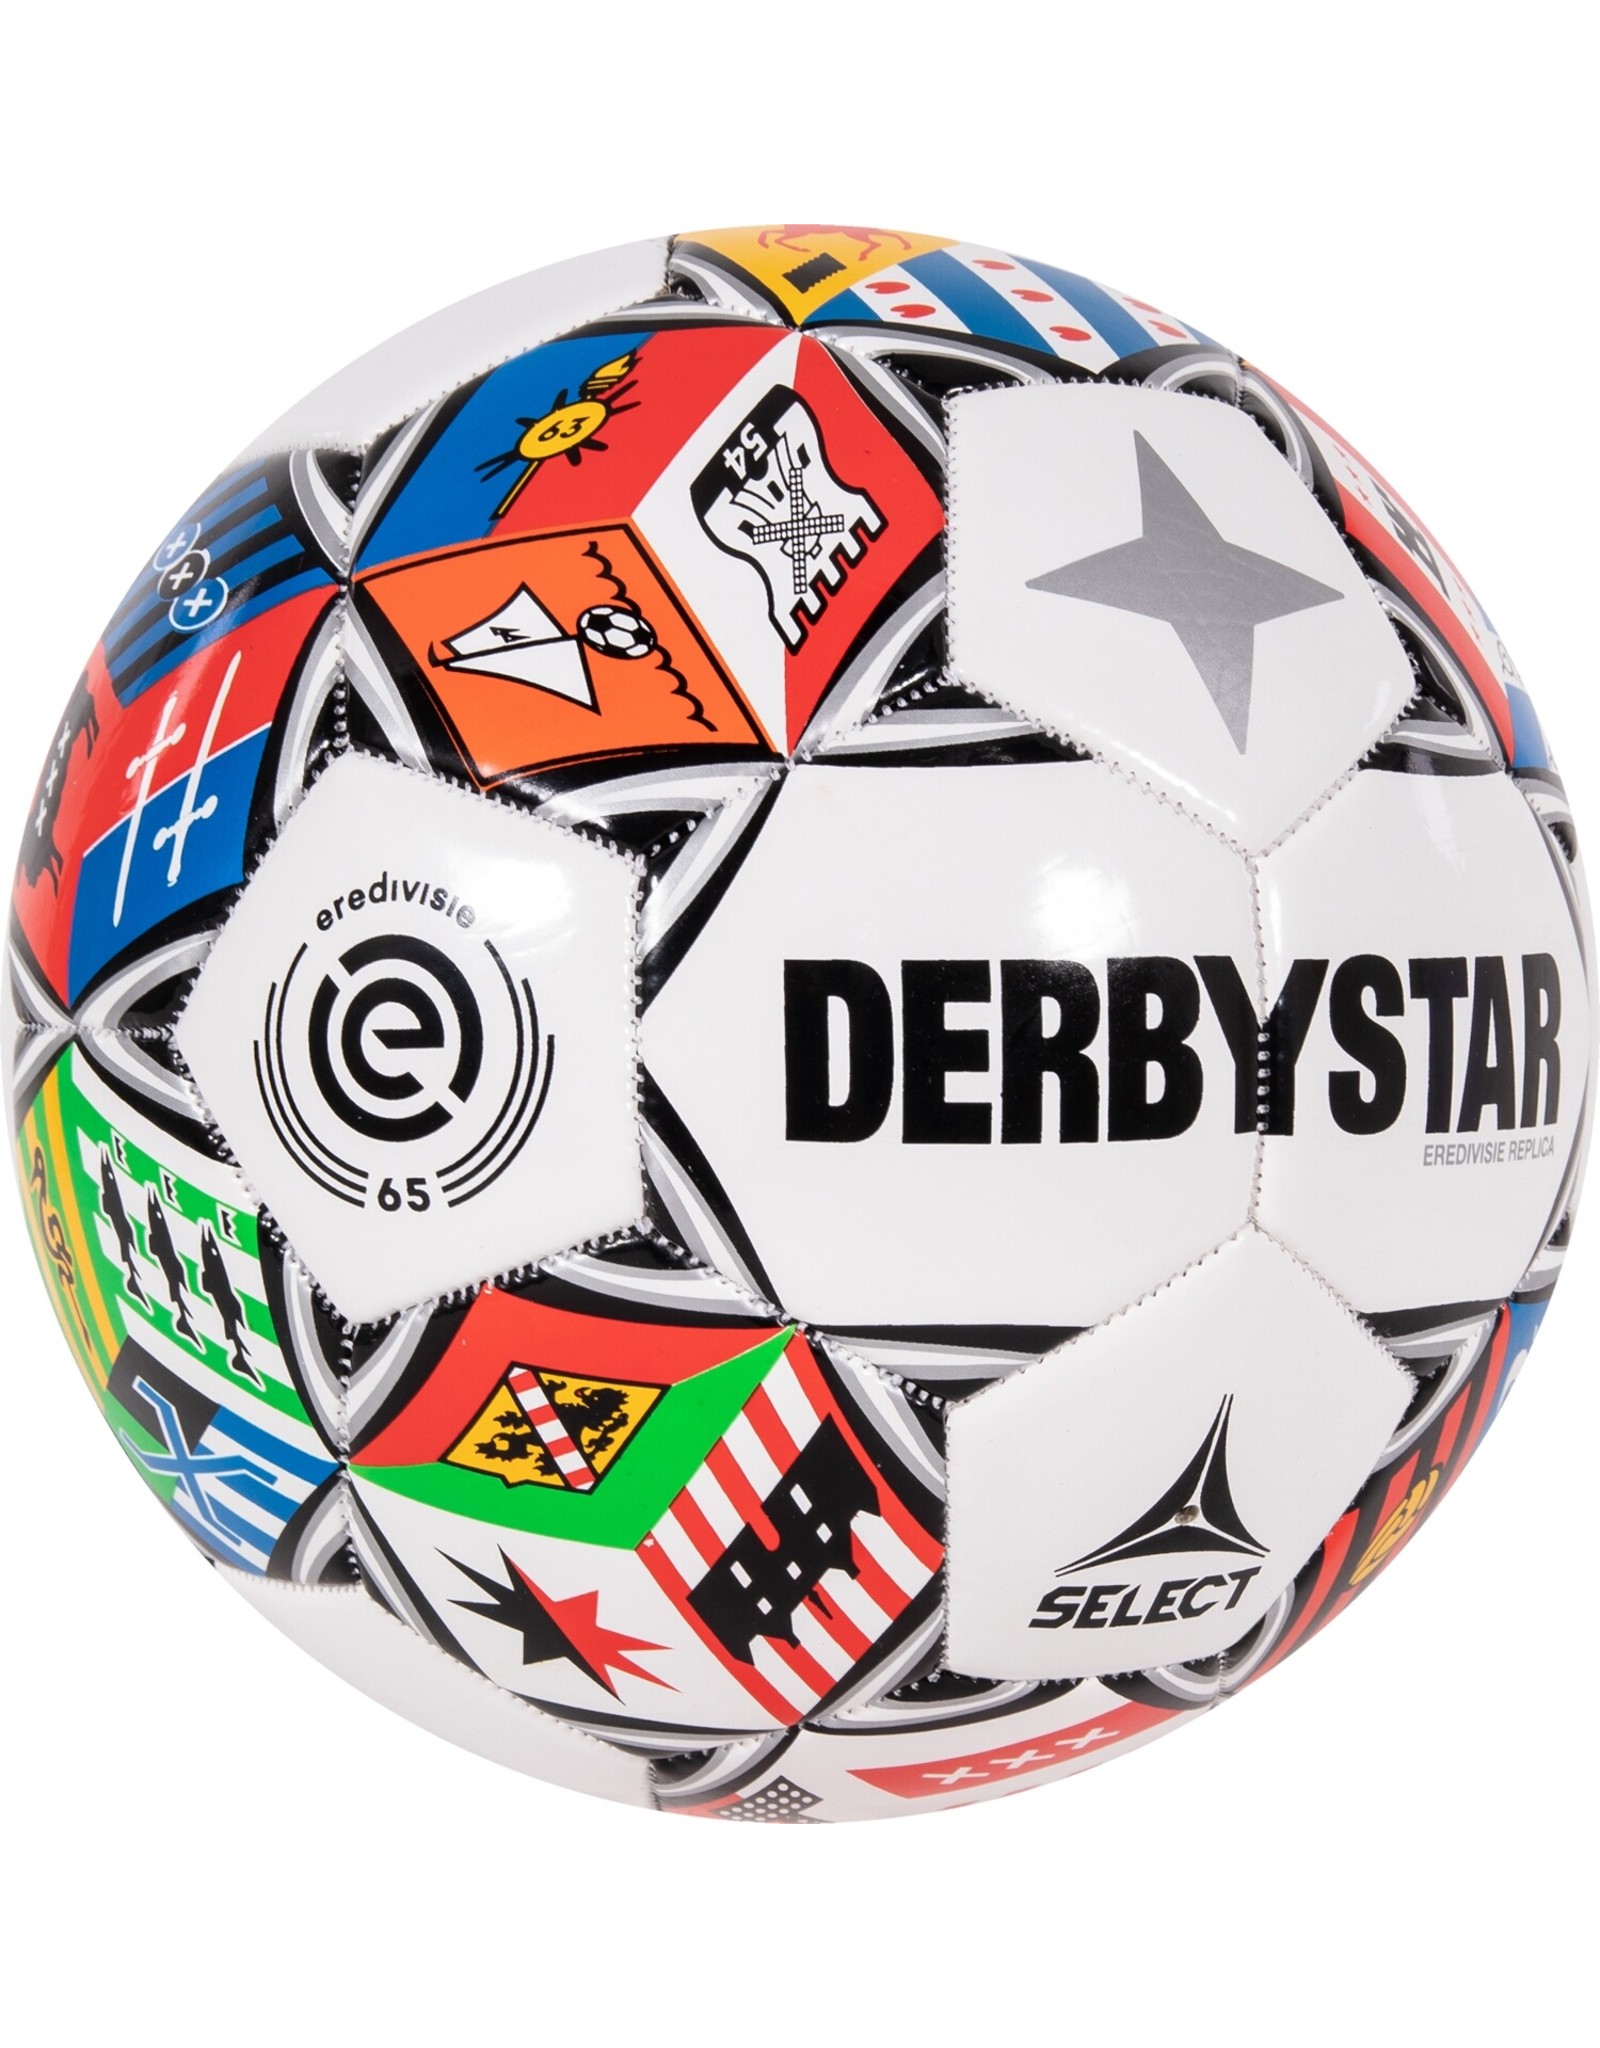 Derbystar Eredivisie Design Replica 21/22  Multi Colour 5